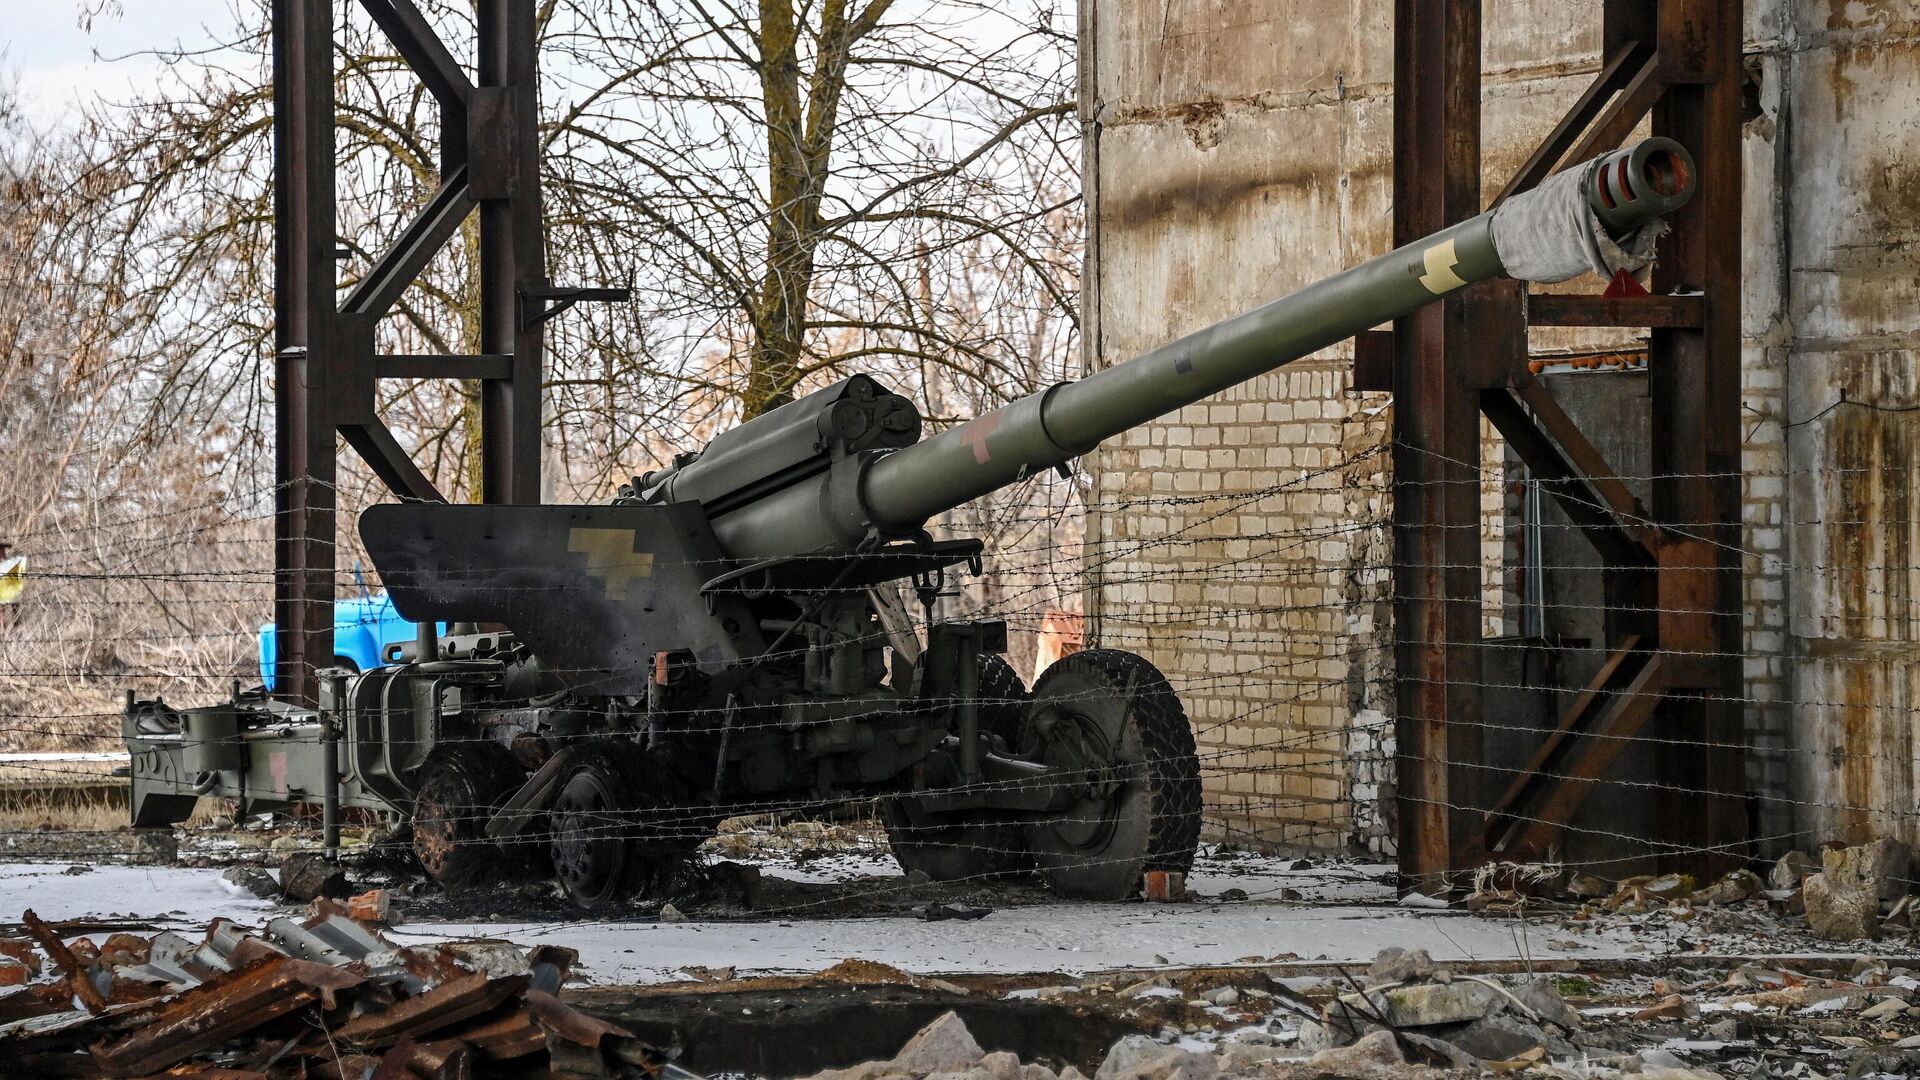 Гаубица из брошенной артиллерийской части Вооруженных сил Украины, временно расположенная на территории пункта приема металла в Бердянске - РИА Новости, 1920, 30.05.2022